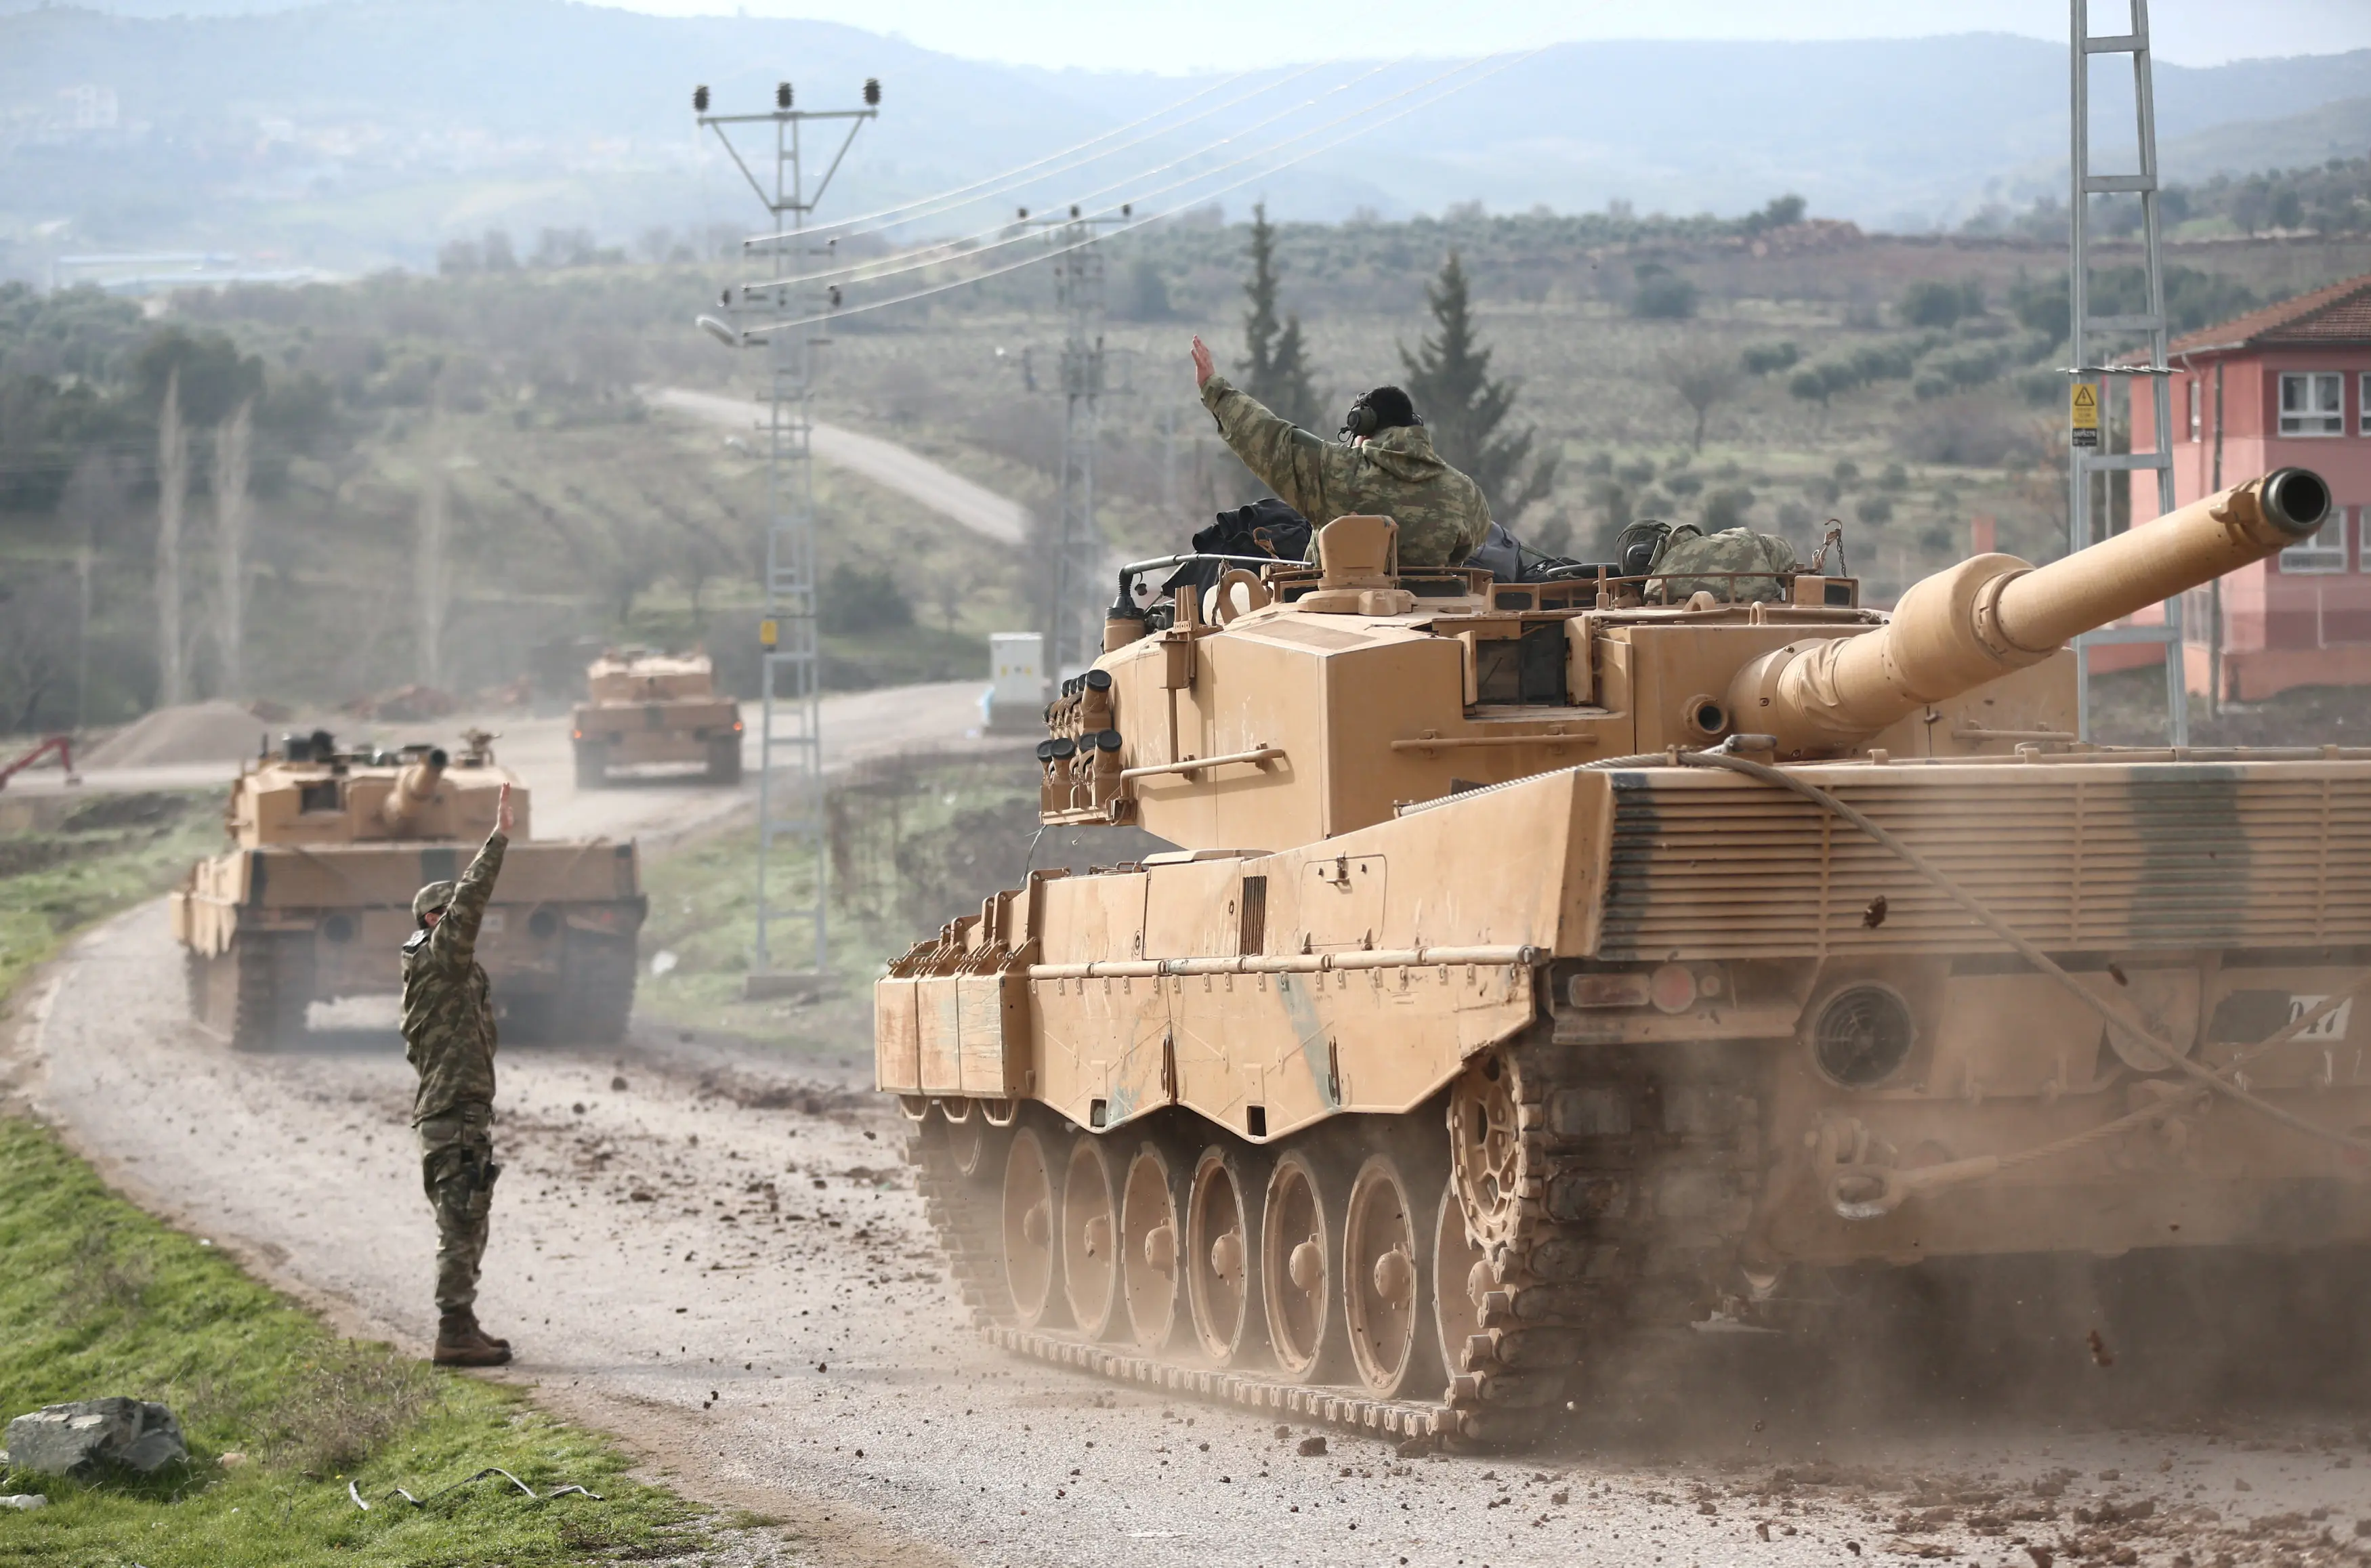 שיירה של צבא טורקיה מגיעה לכפר הסמוך לגבול עם סוריה, 21 בינואר 2018